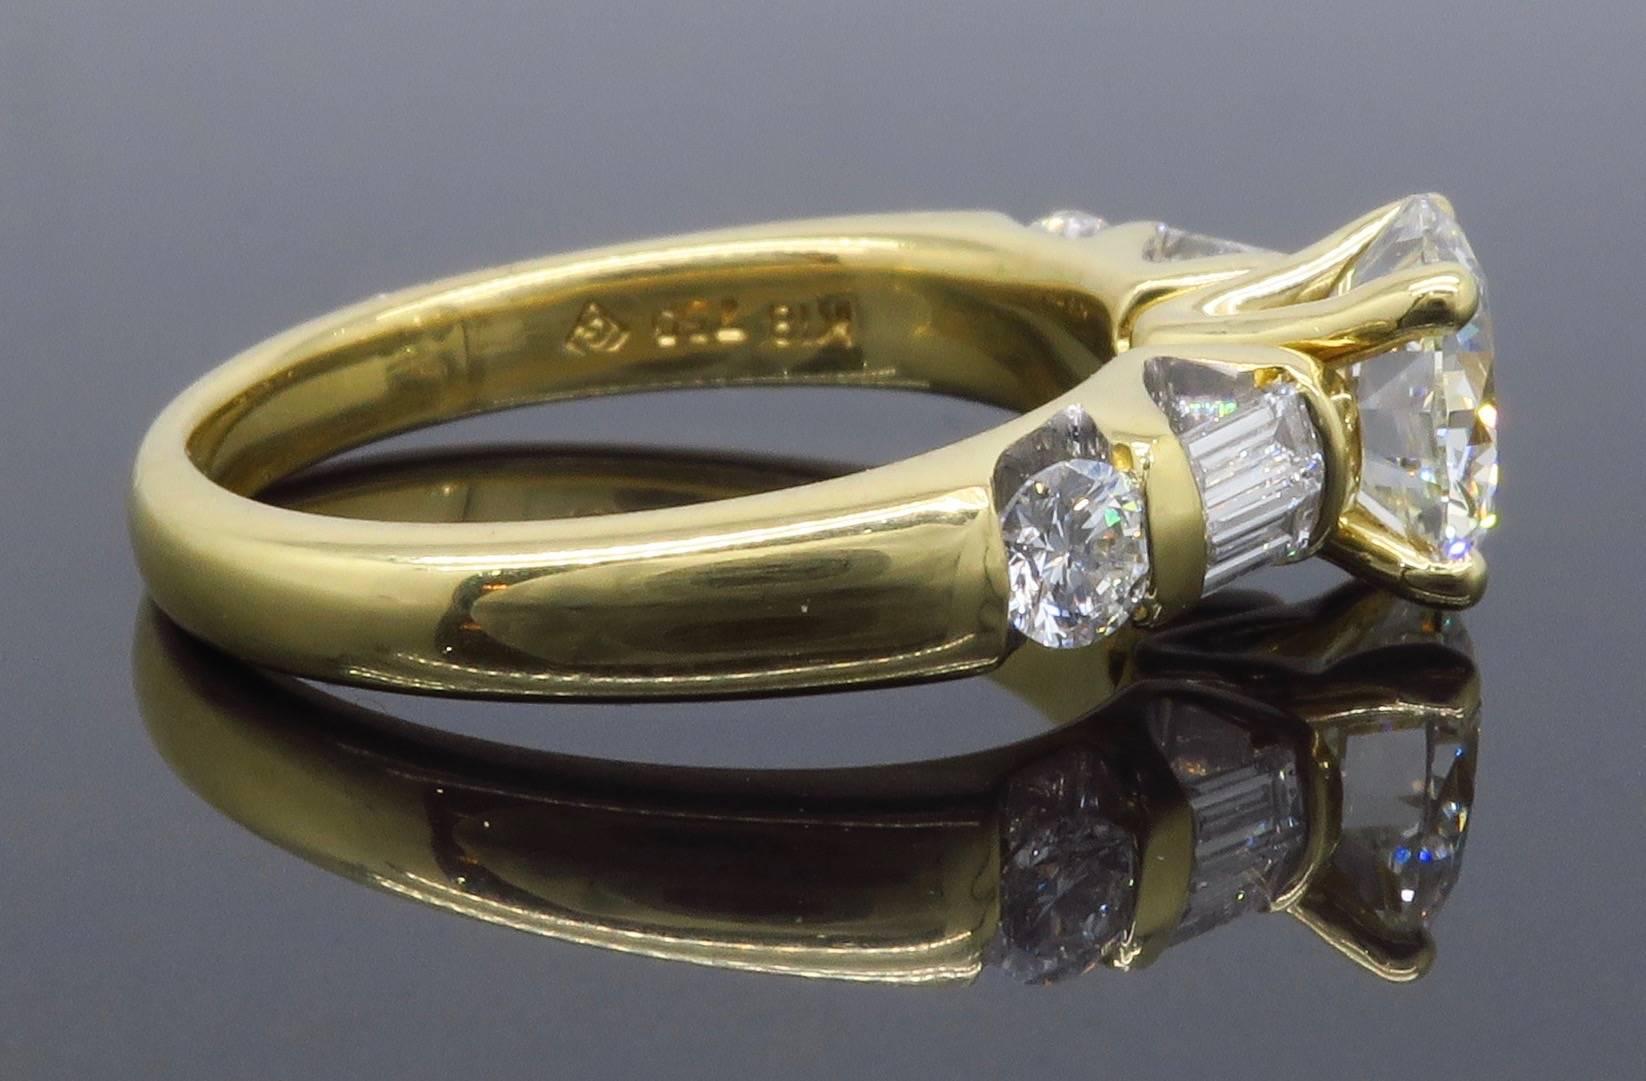 GIA Certified 1.66 Carat Diamond Engagement Ring in 18 Karat Yellow Gold 1